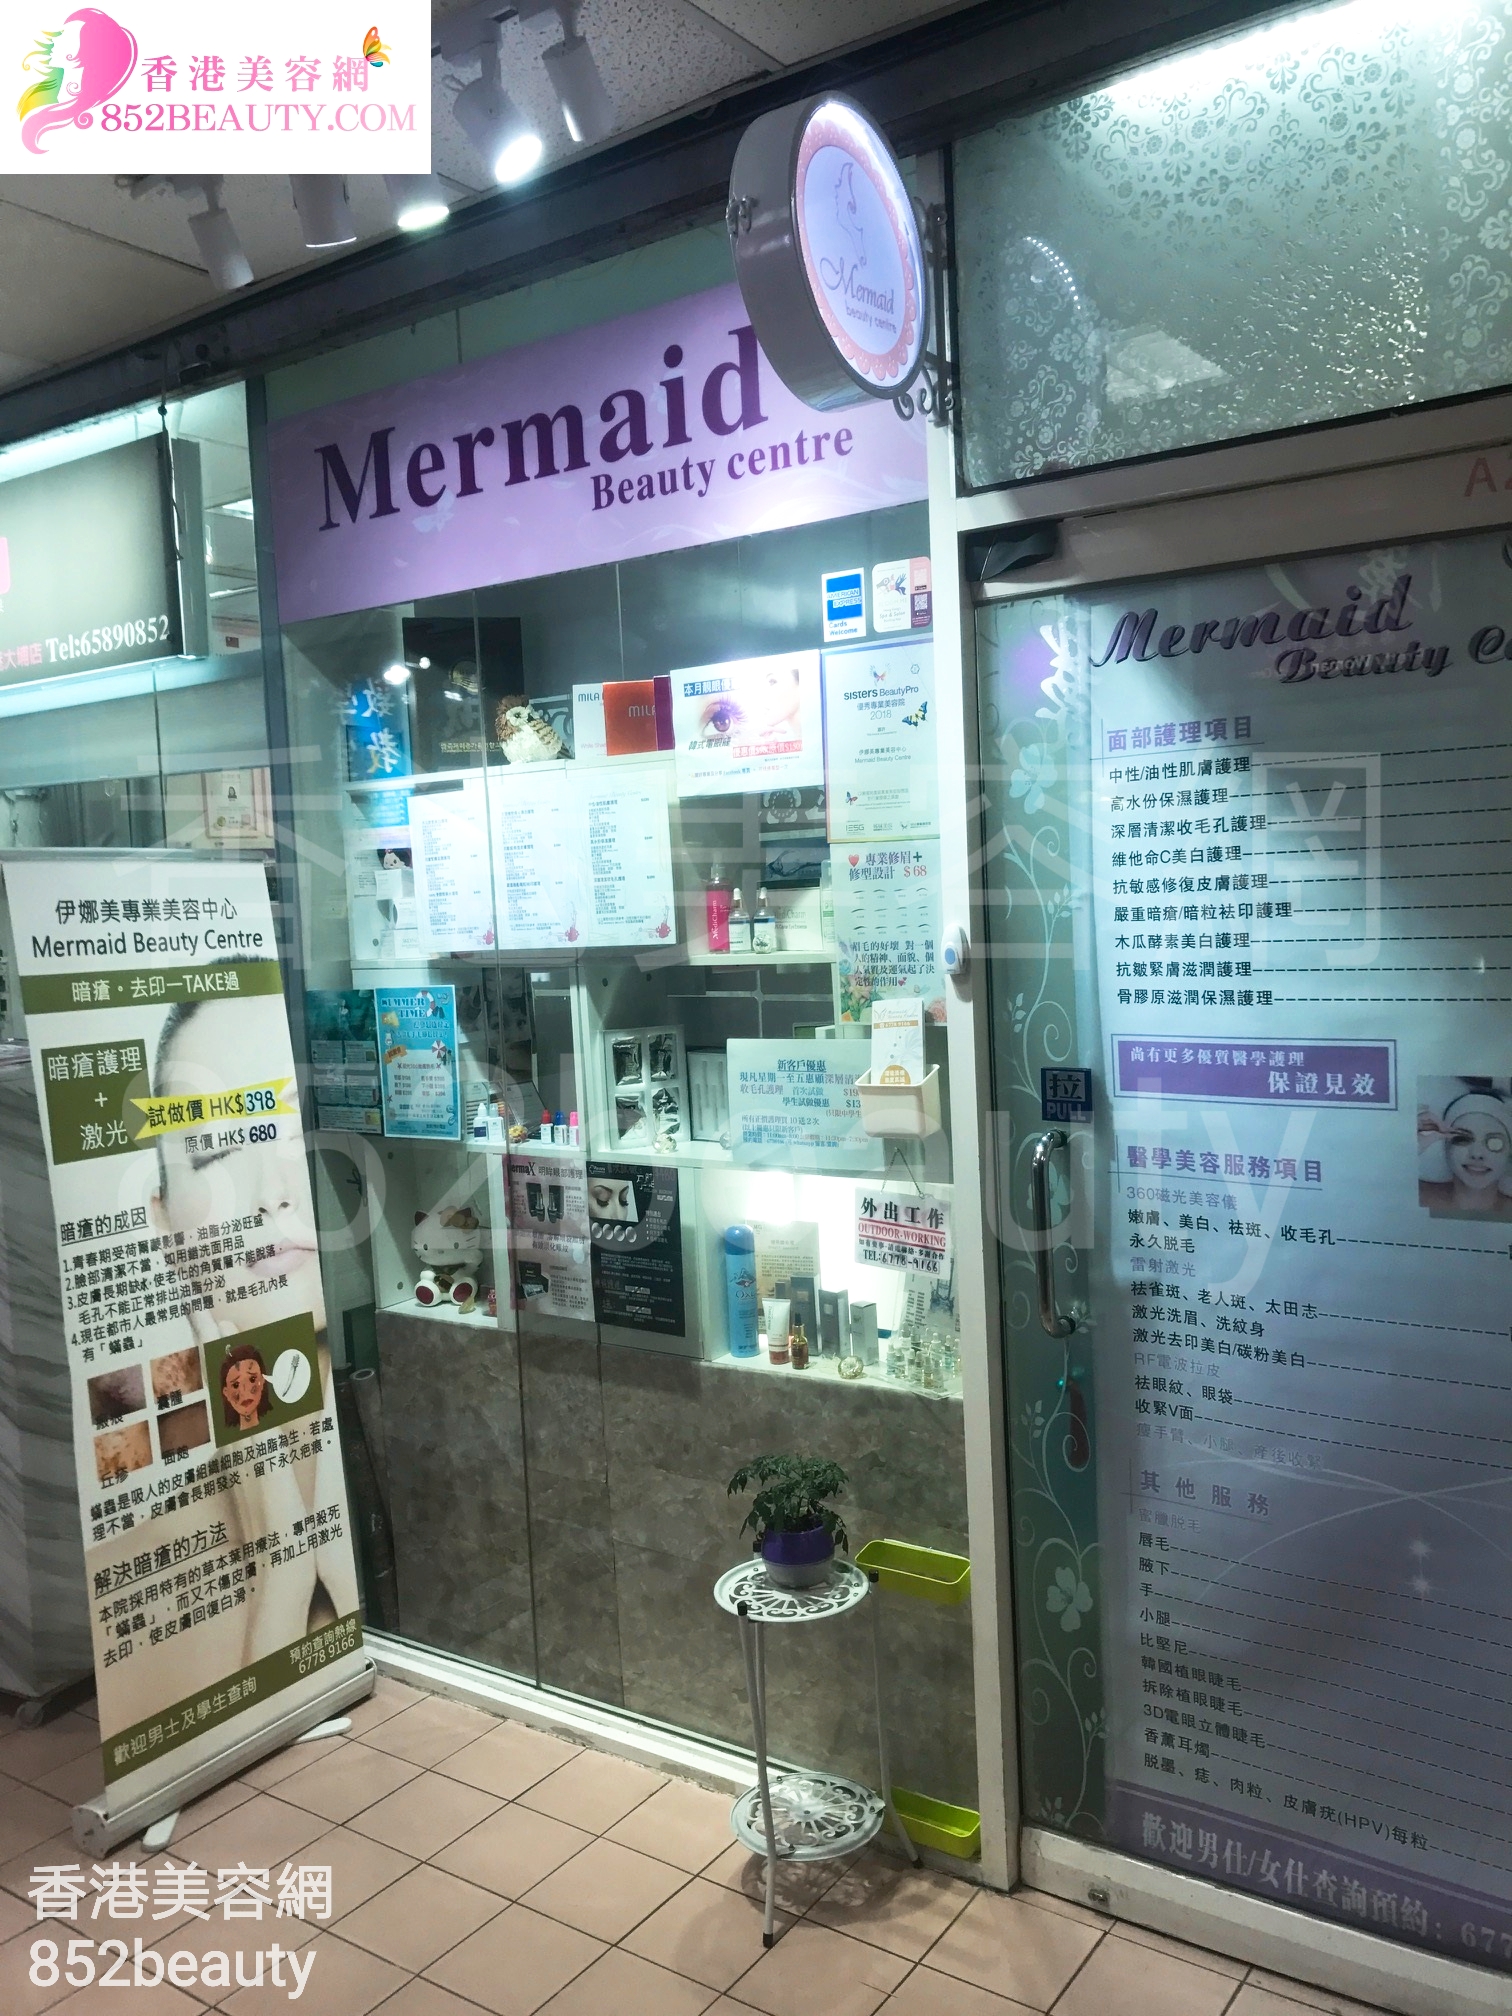 : 伊娜美專業美容中心 Mermaid Beauty Centre